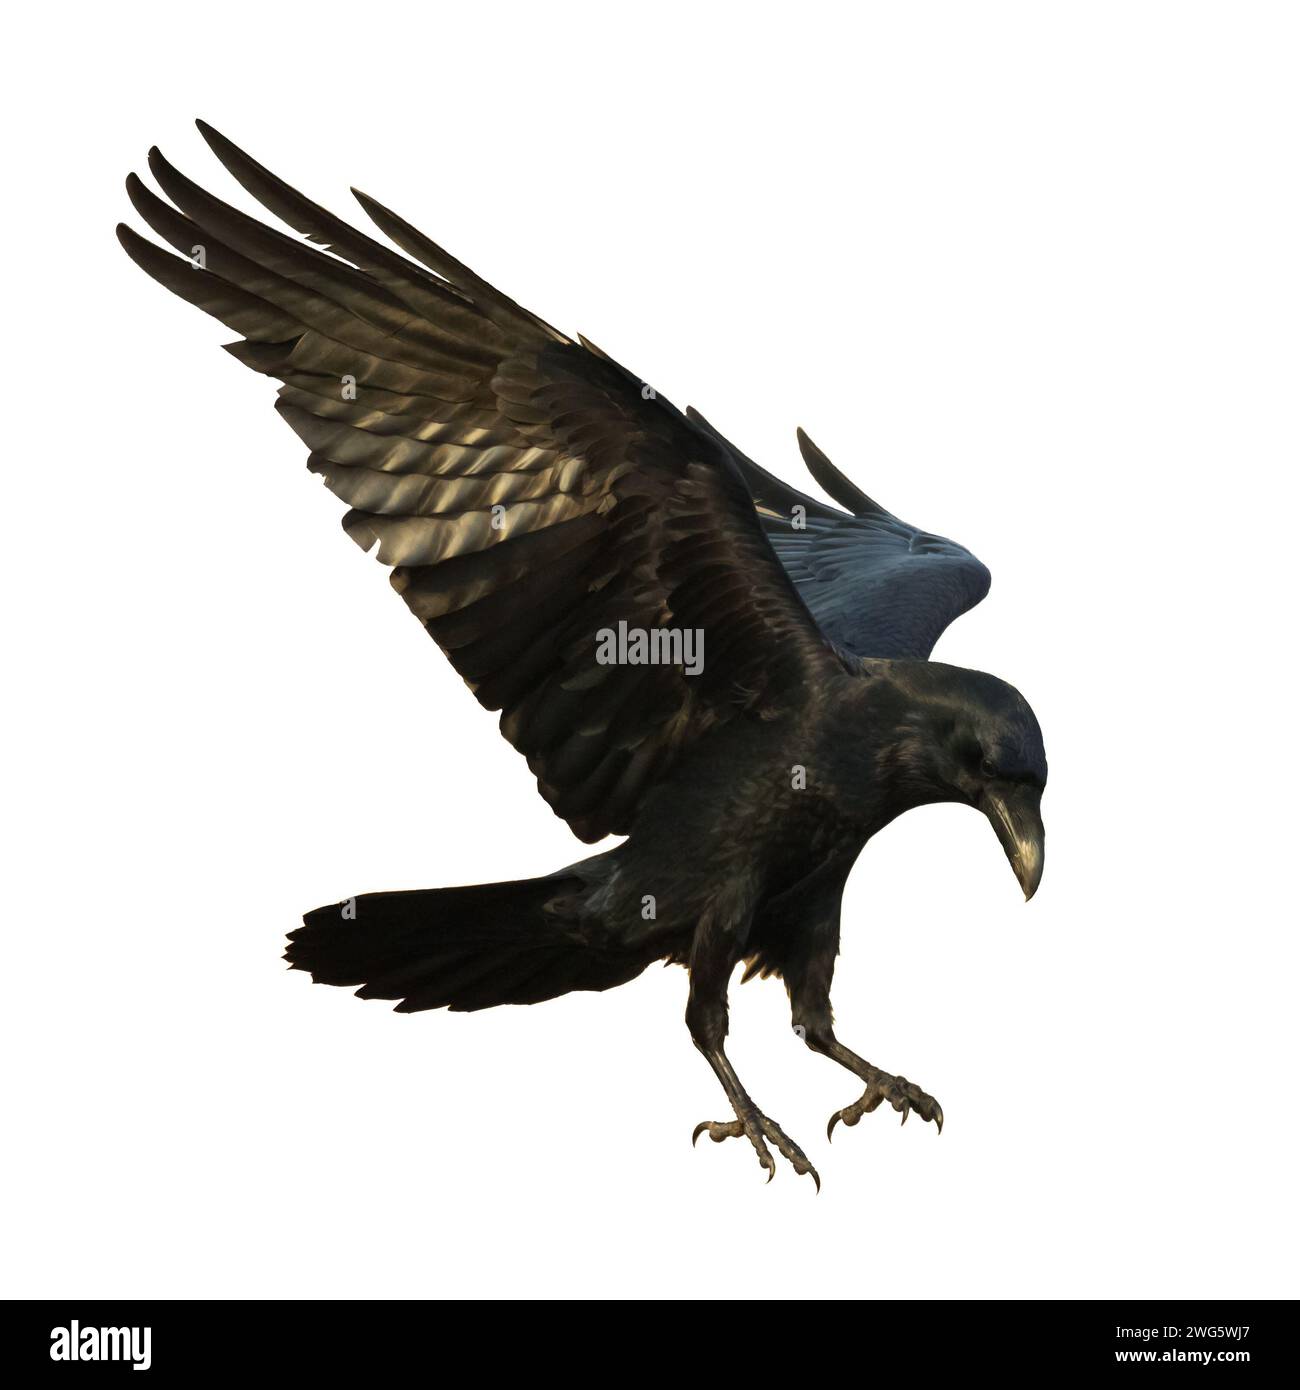 Vögel fliegen Raben isoliert auf weißem Hintergrund Corvus corax. Halloween, Silhouette eines großen schwarzen Vogels im Flug Stockfoto